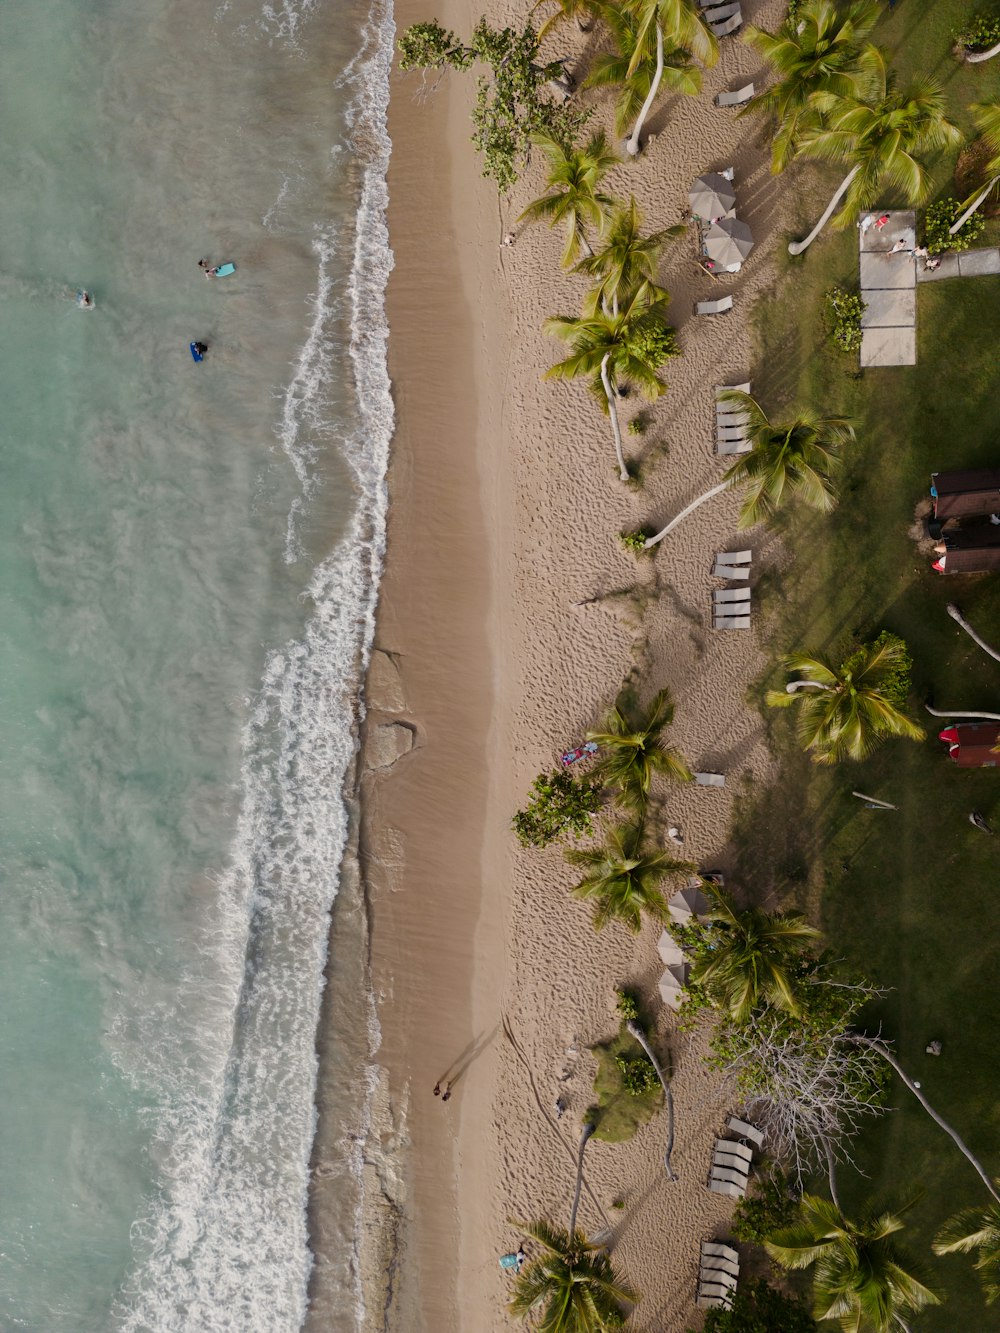 una vista aerea di una spiaggia sabbiosa con palme